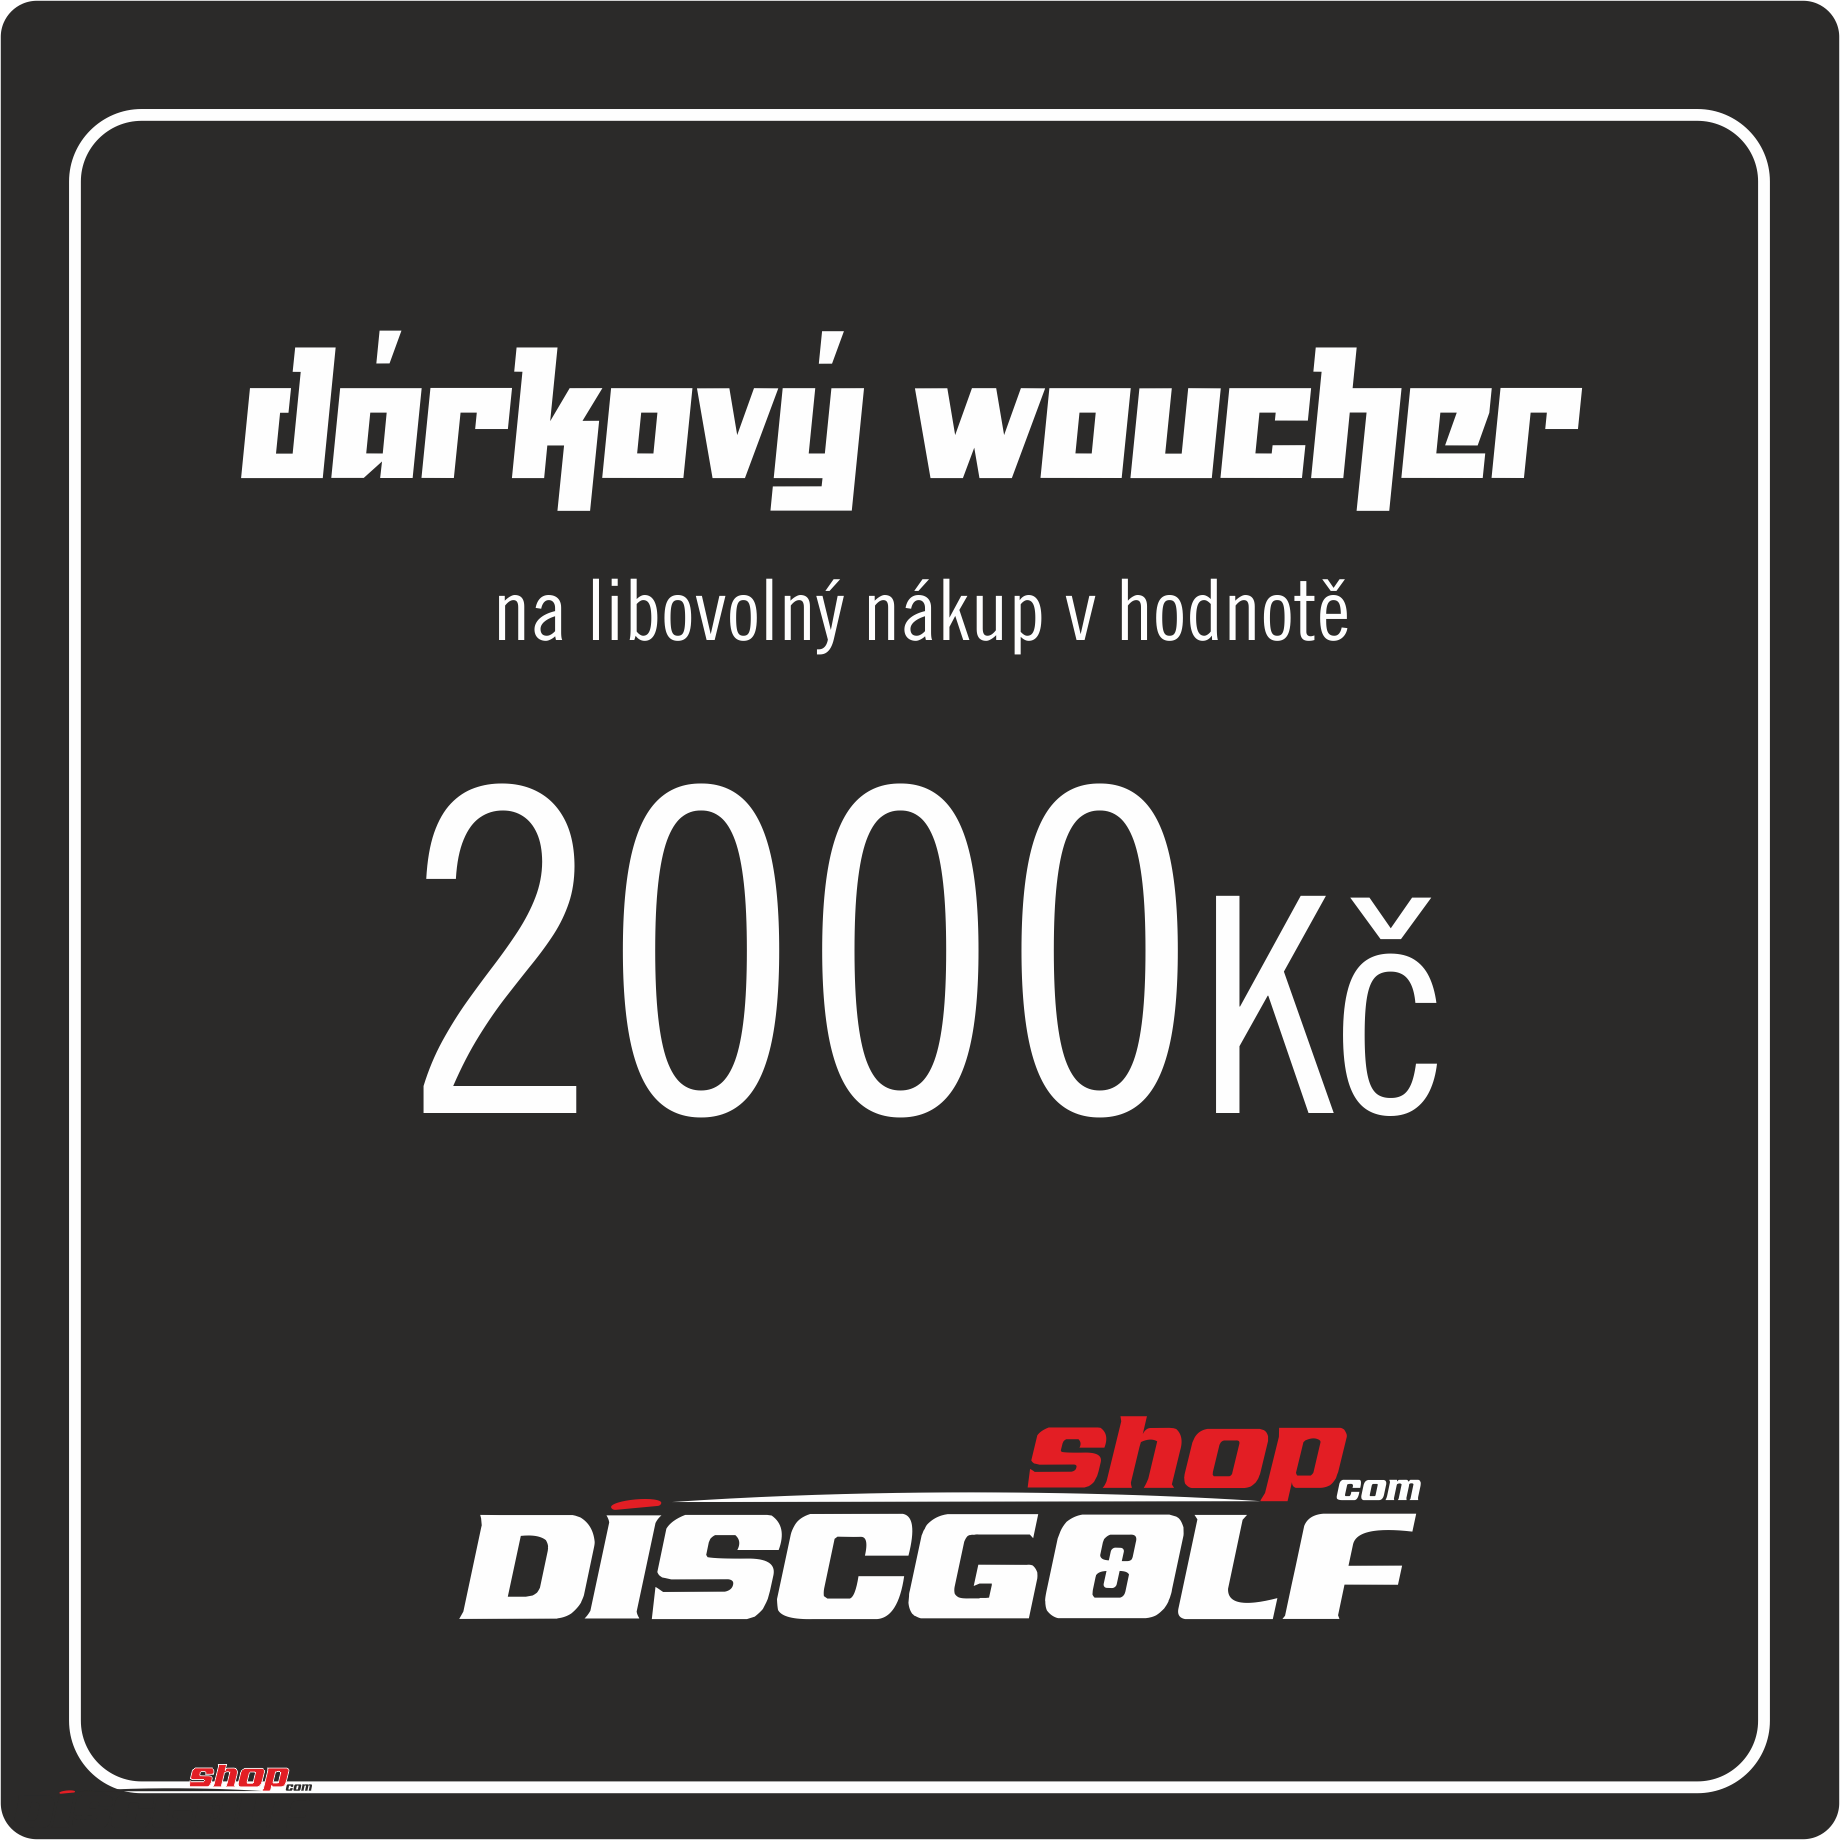 Dárkový woucher - kupon 2000Kč (discgolf)